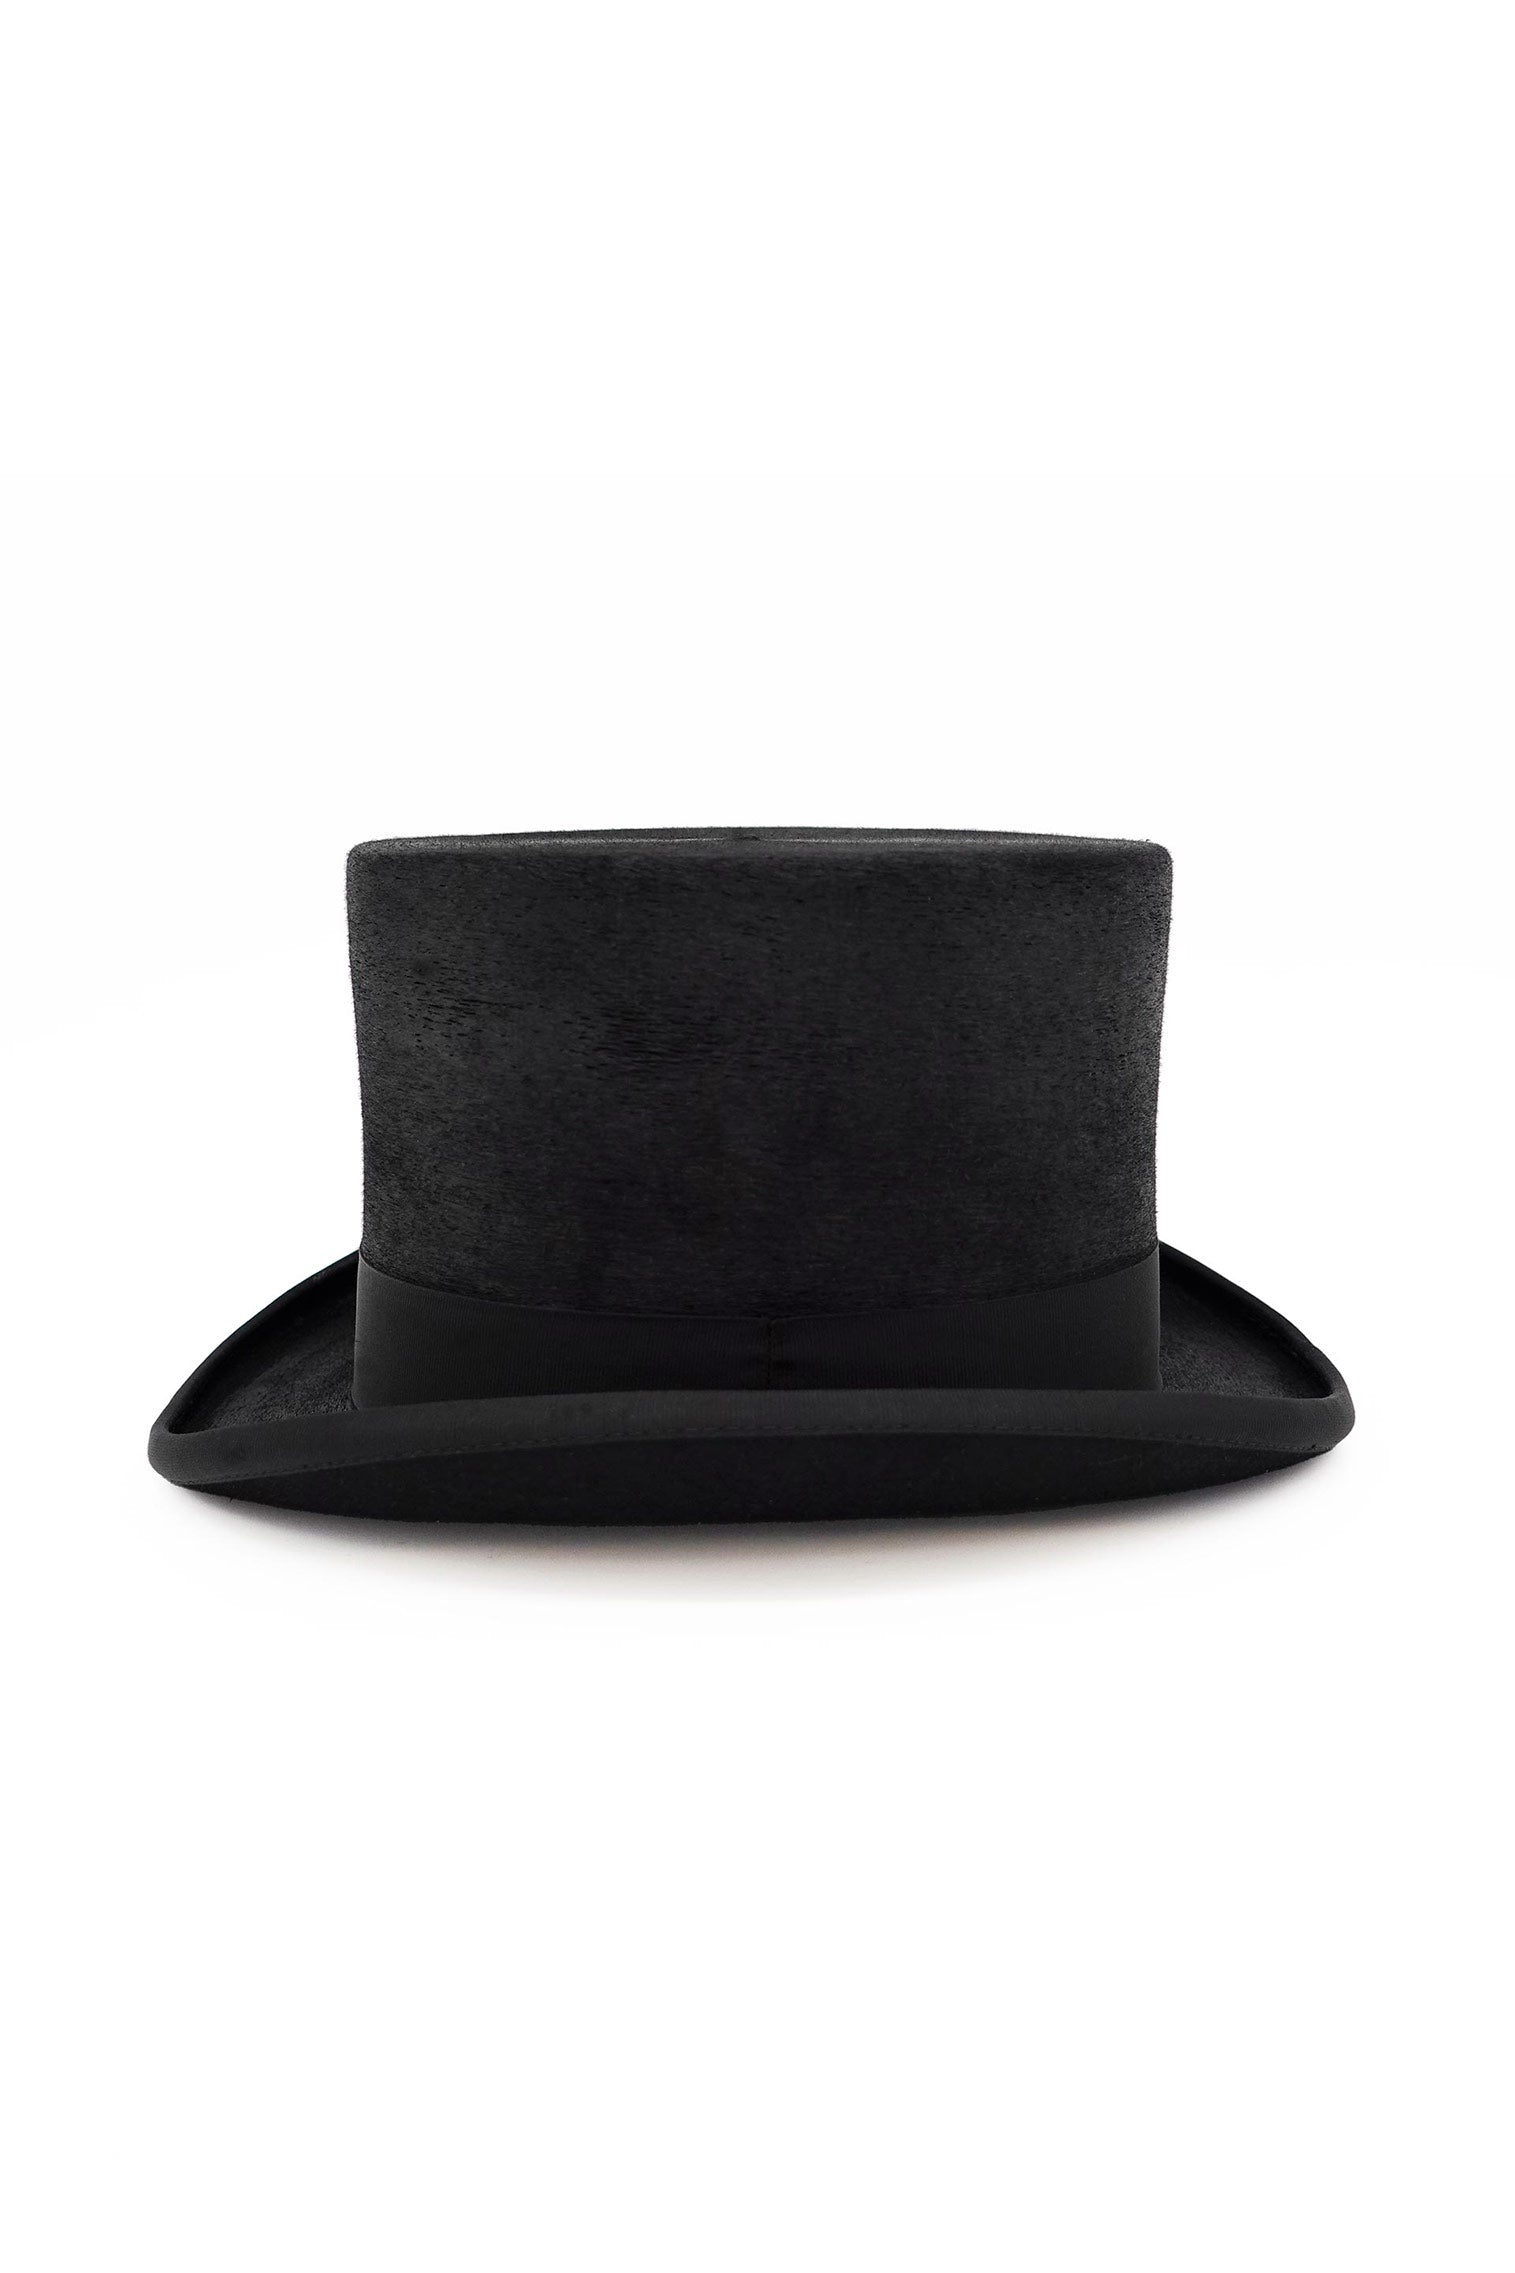 Mayfair Top Hat -  - Lock & Co. Hatters London UK